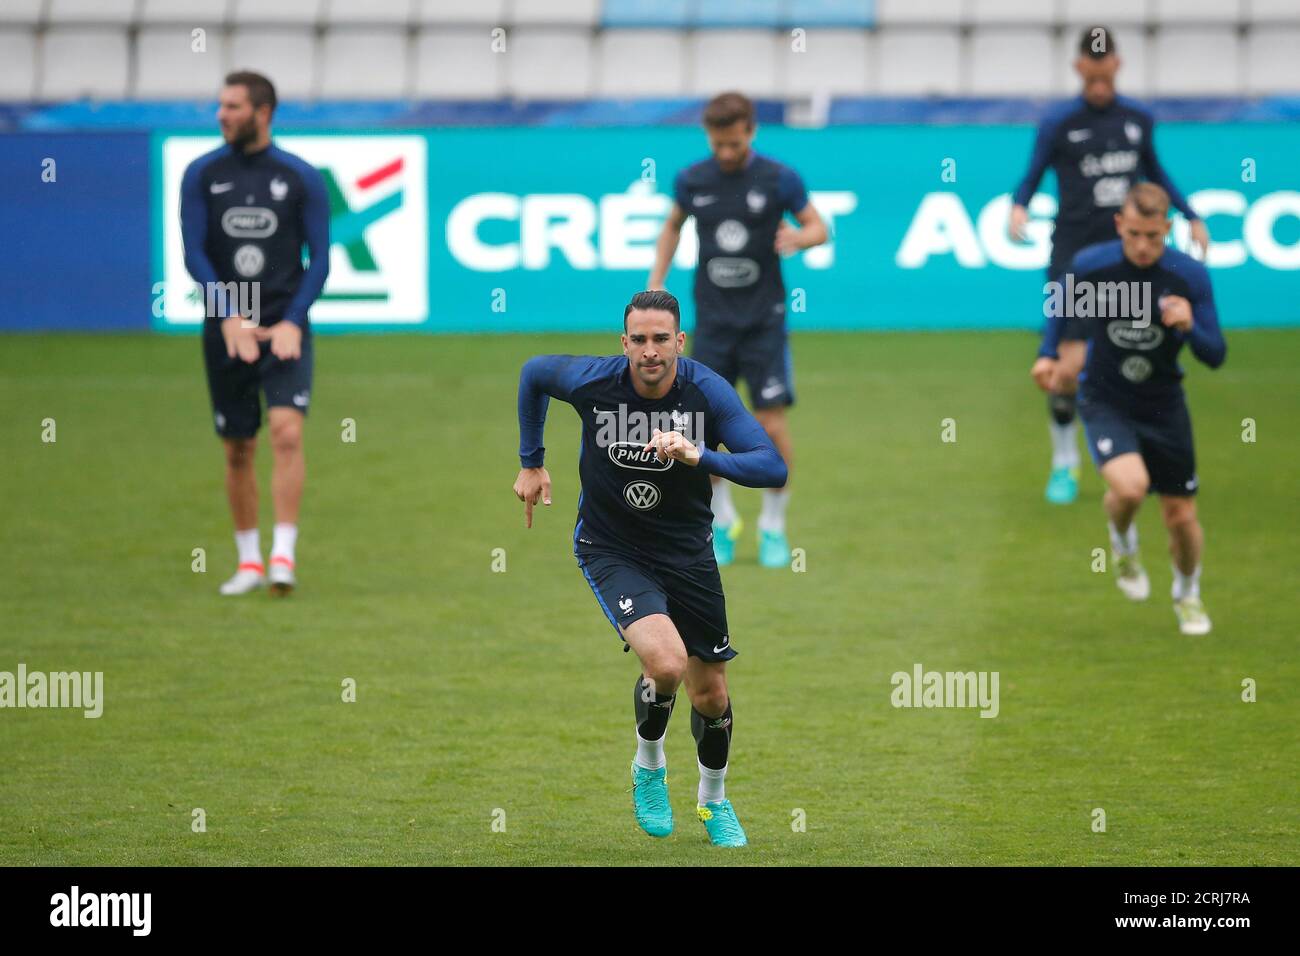 Il giocatore nazionale francese di calcio ADIL rami partecipa a una sessione di allenamento allo stadio Beaujoire di Nantes, 29 maggio 2016. REUTERS/Stephane Mahe Foto Stock